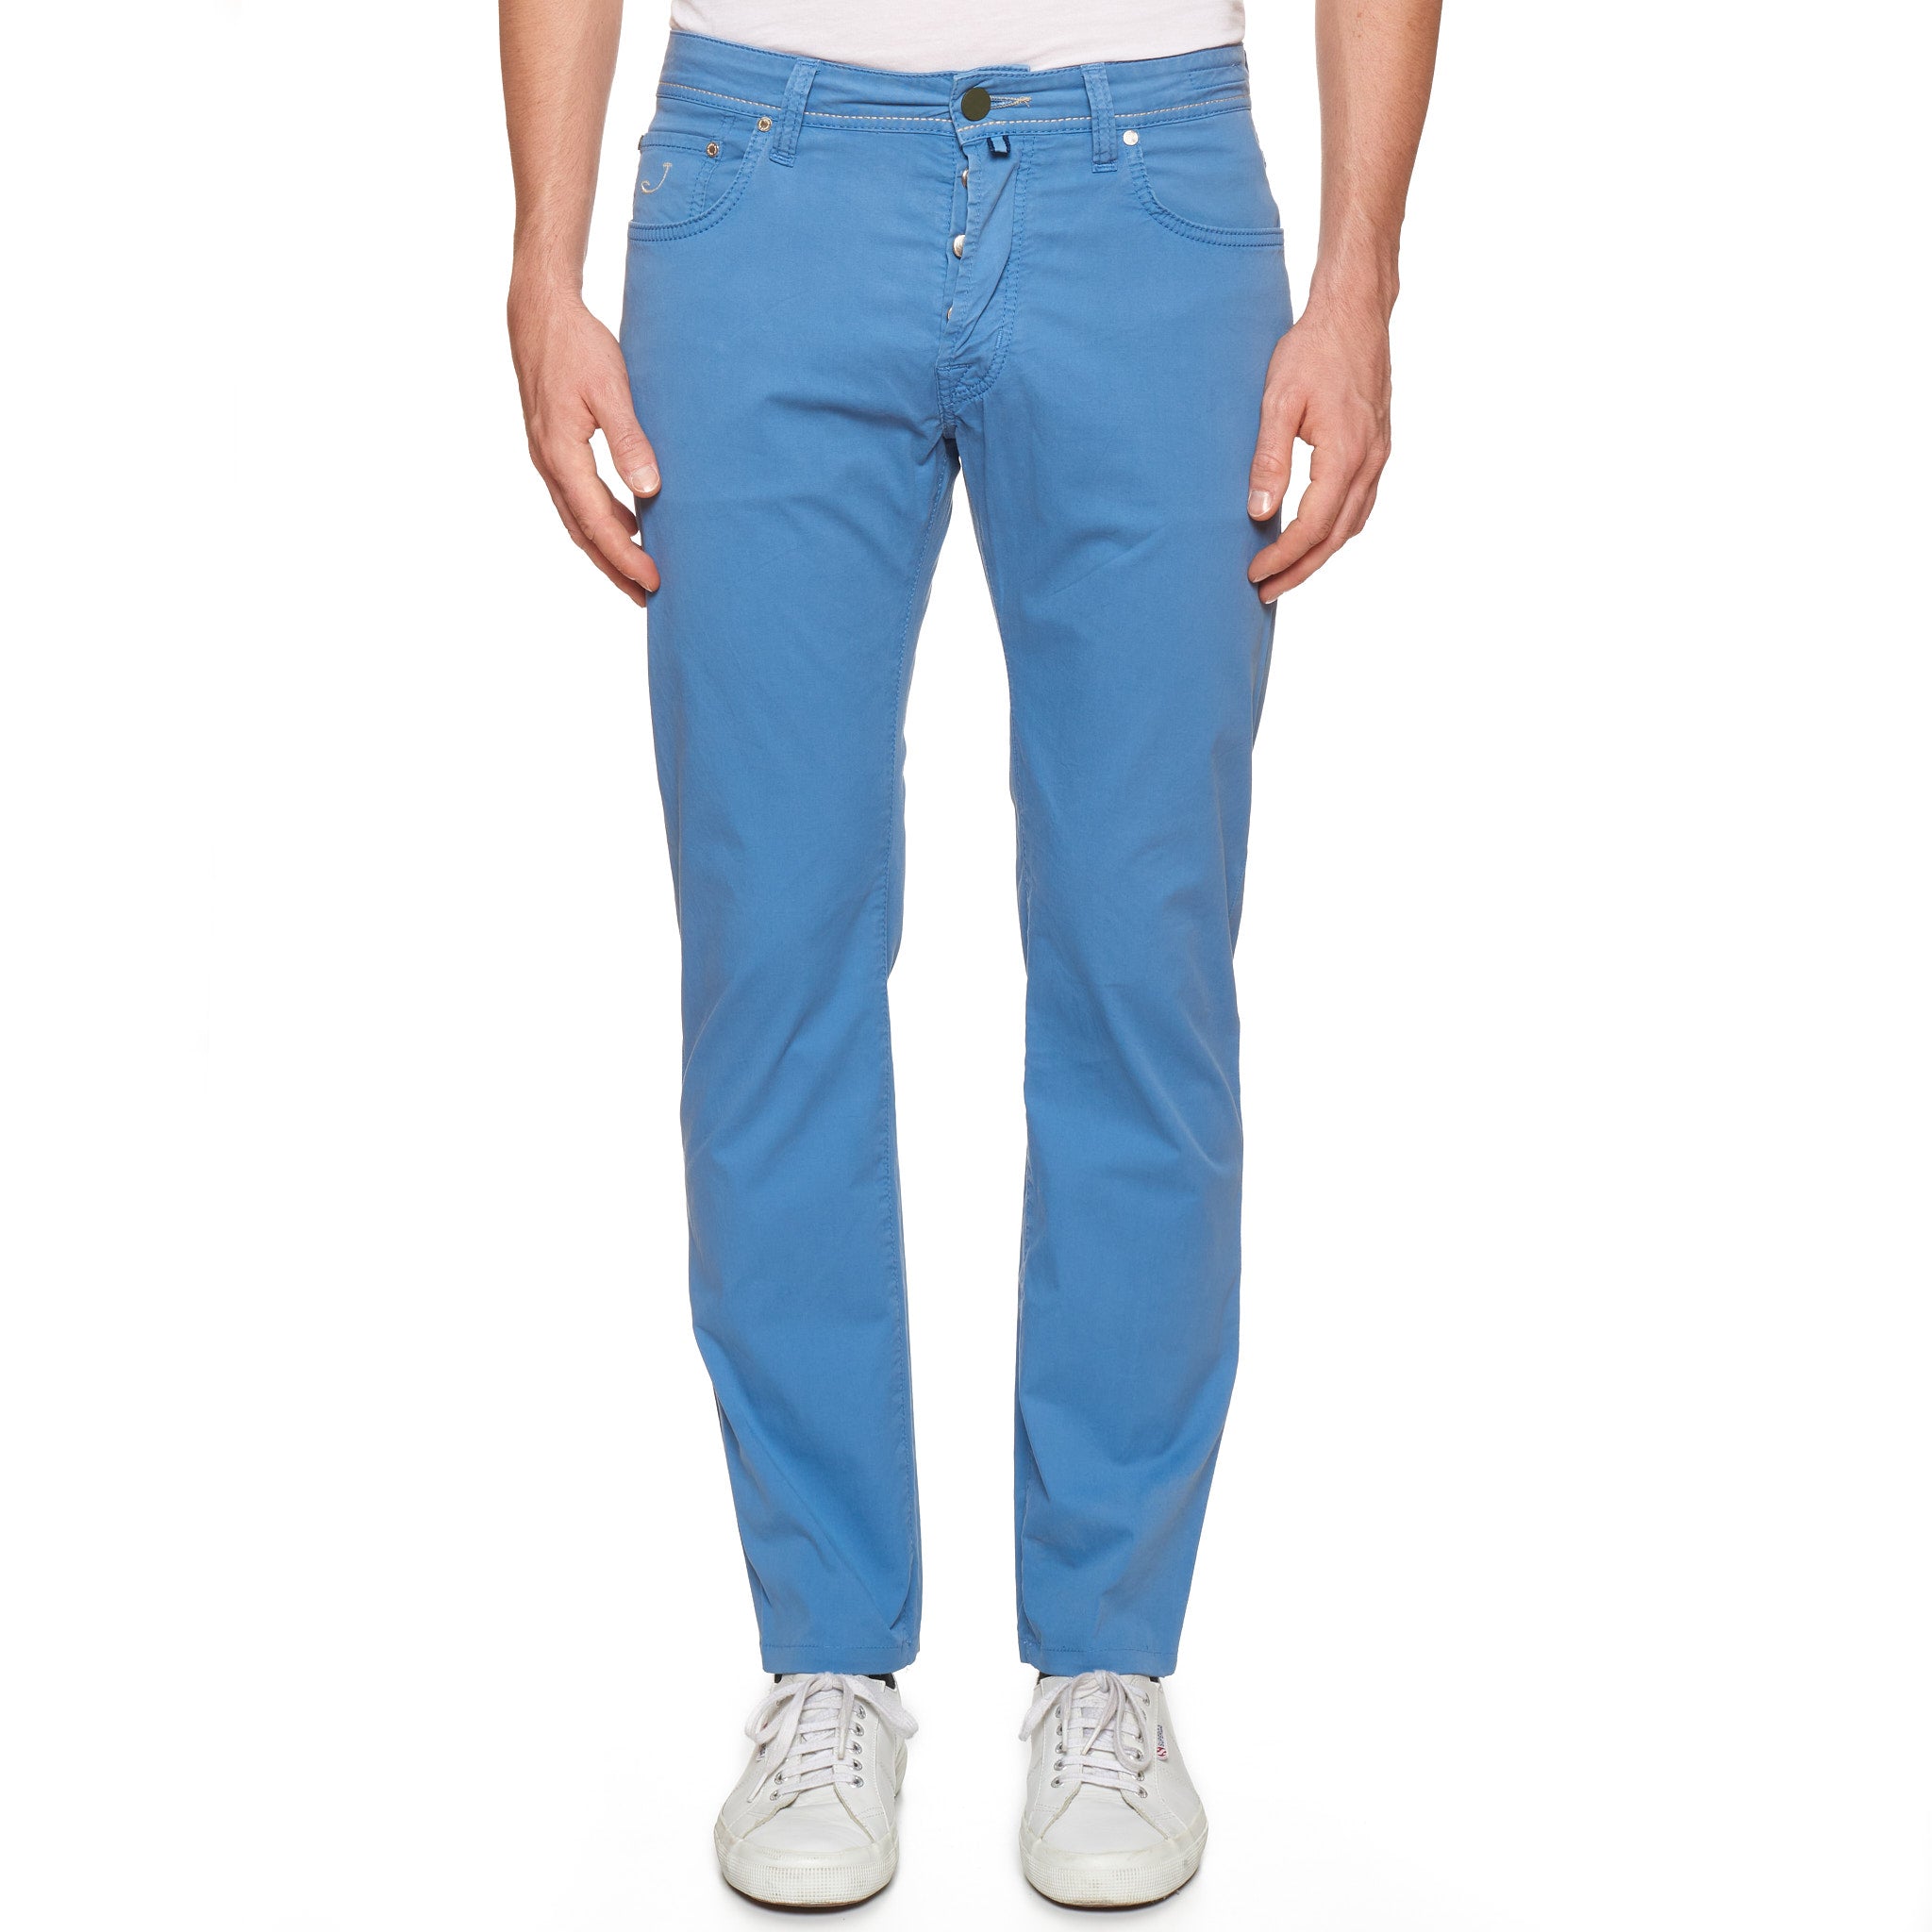 JACOB COHEN PW688 Comfort Blue Cotton Stretch Slim Fit Jeans Pants Size 33